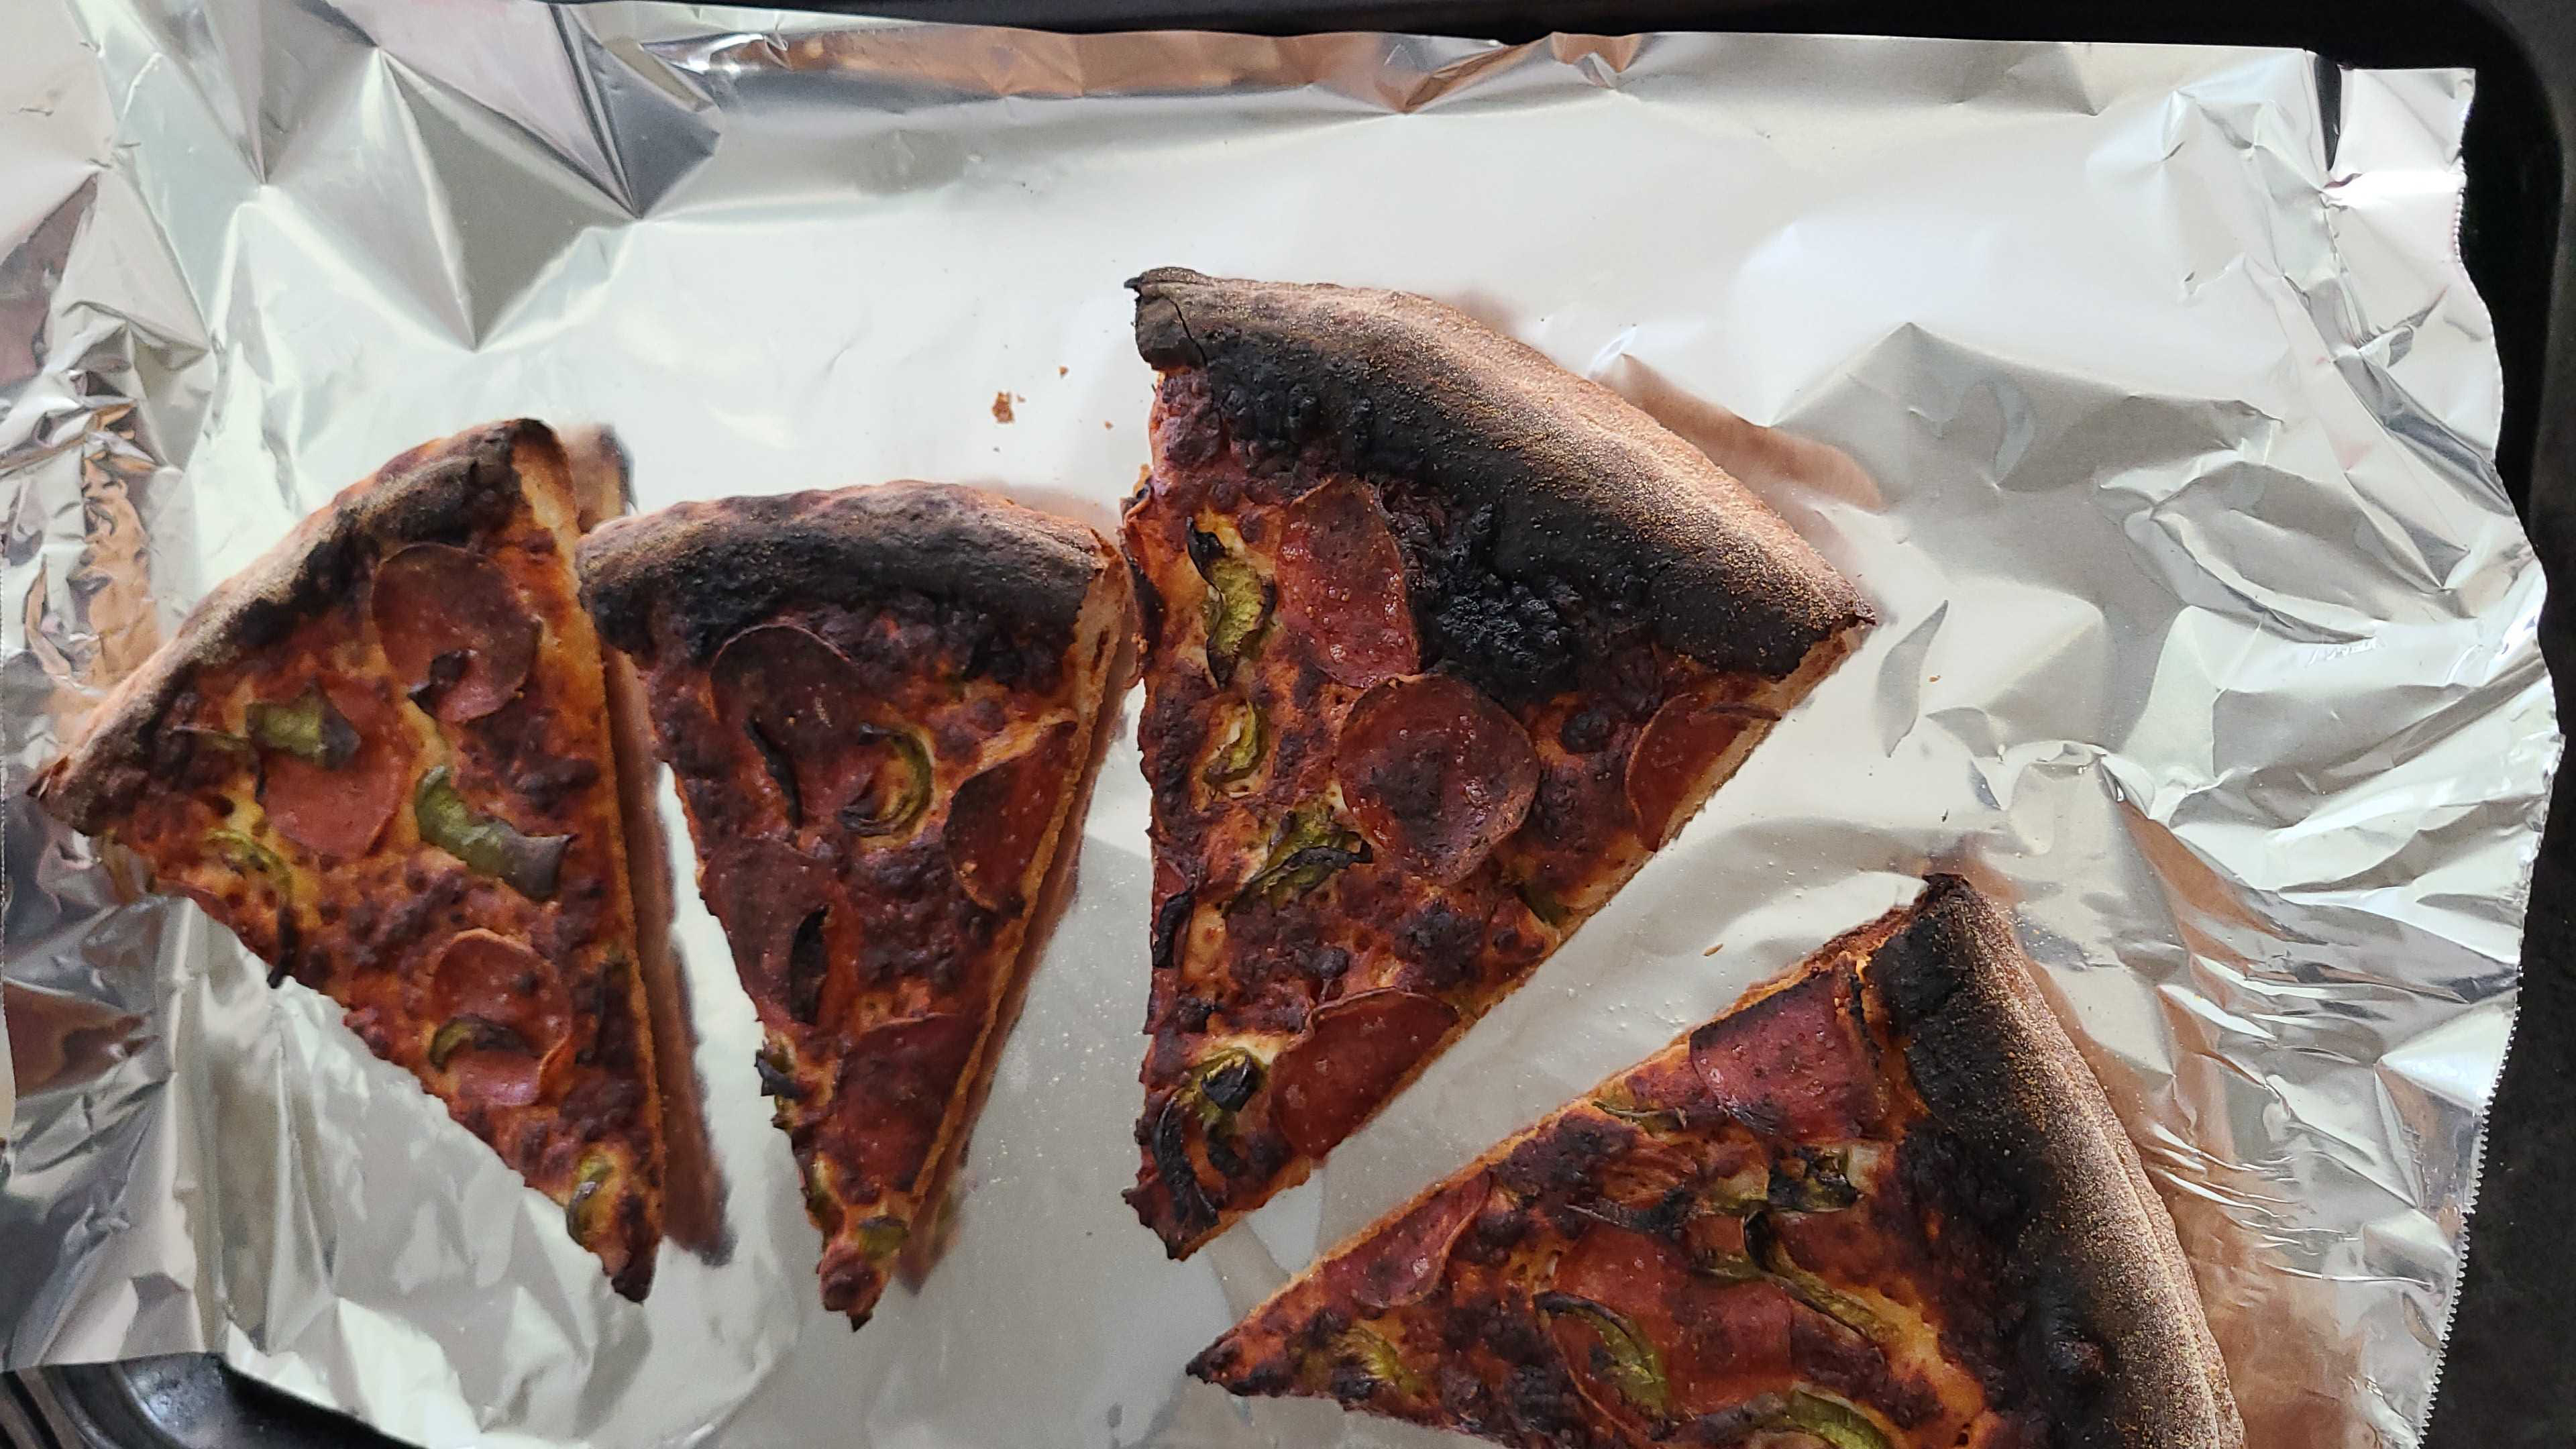 Steven's burned-ass pizza